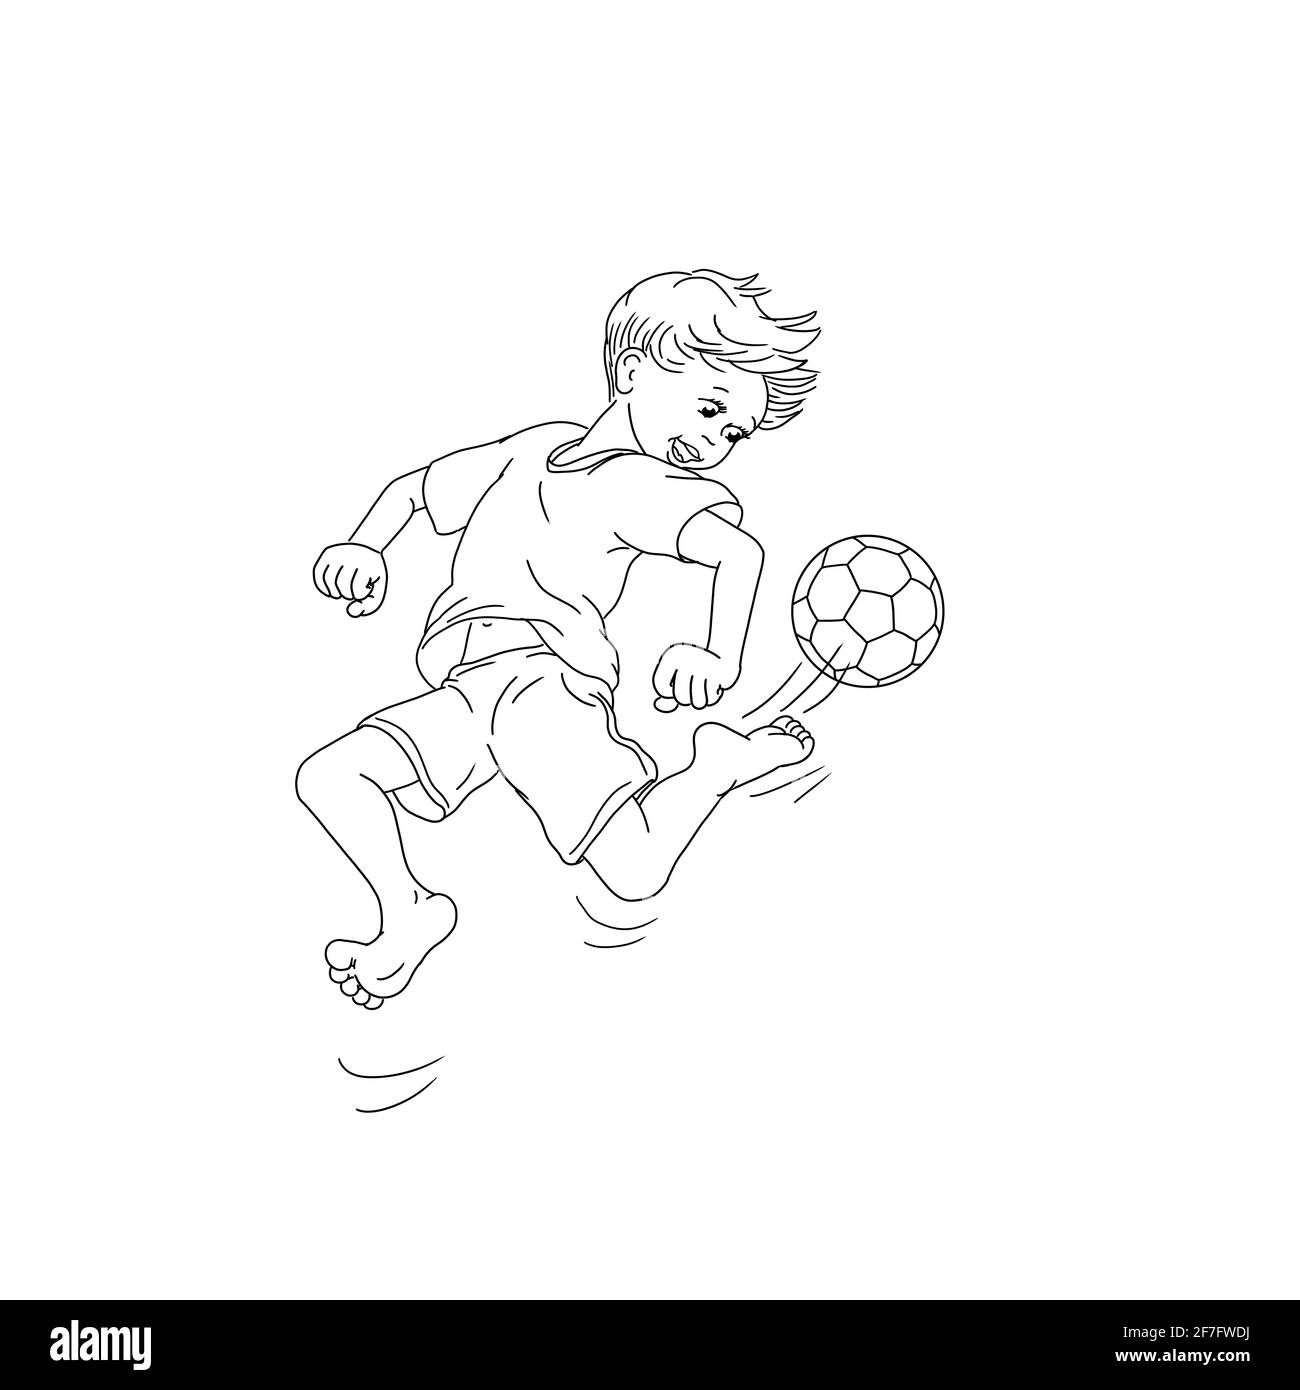 Un garçon de football jouant des sauts pieds nus donne un coup de pied à la balle de saut jeune club jeunes sport final Champions League enfant enfants table active mouvement de football Banque D'Images